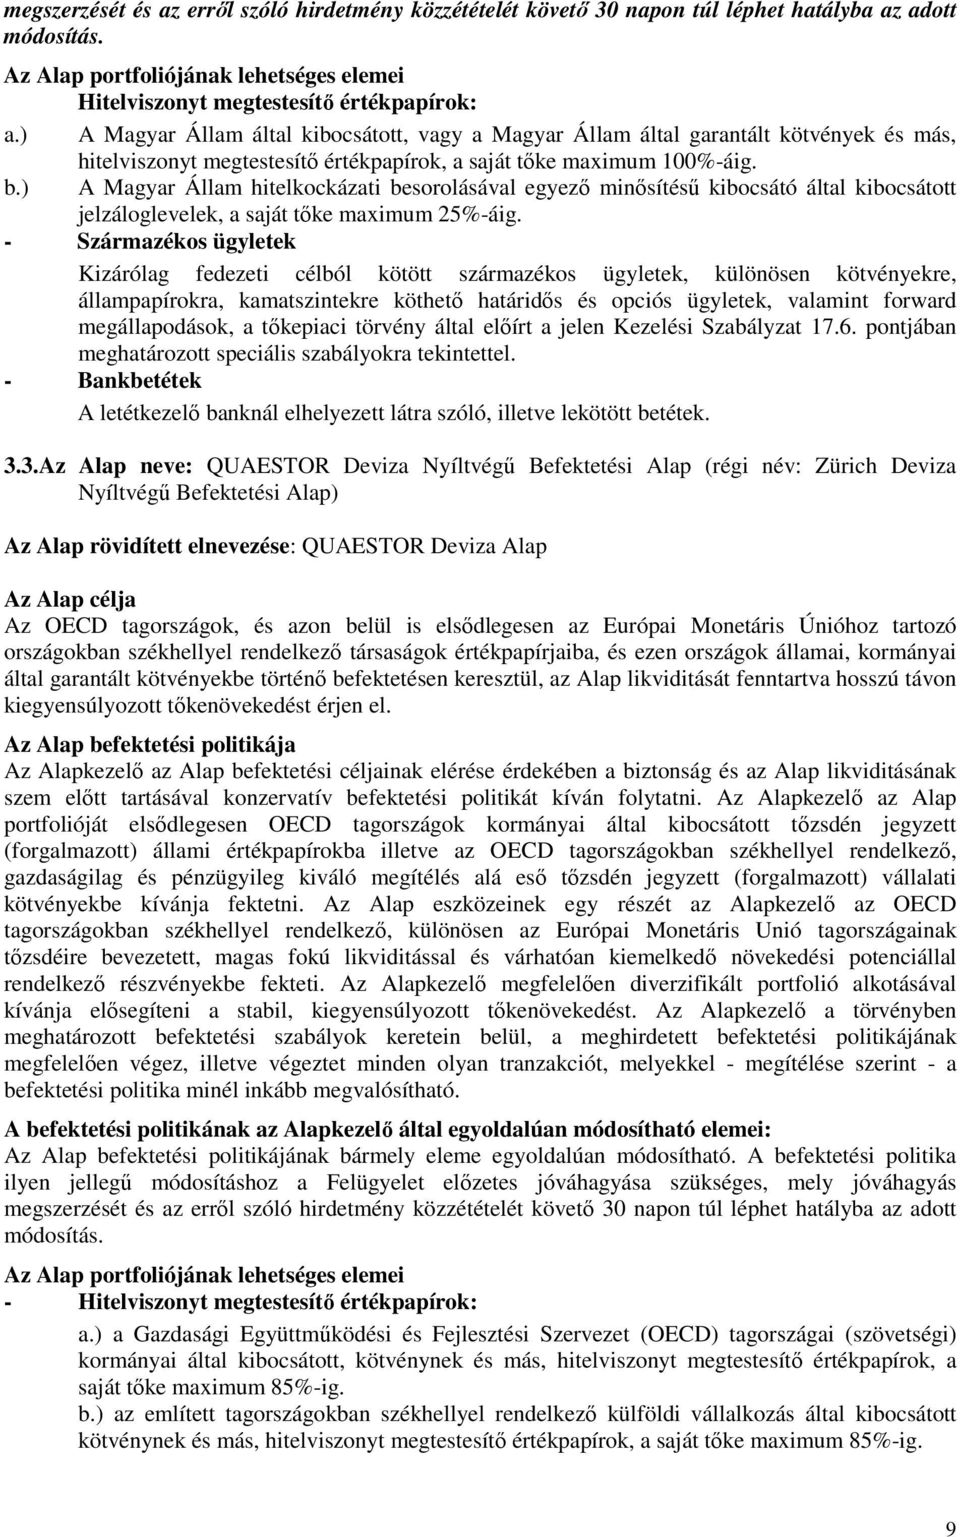 ) A Magyar Állam hitelkockázati besorolásával egyezı minısítéső kibocsátó által kibocsátott jelzáloglevelek, a saját tıke maximum 25%-áig.